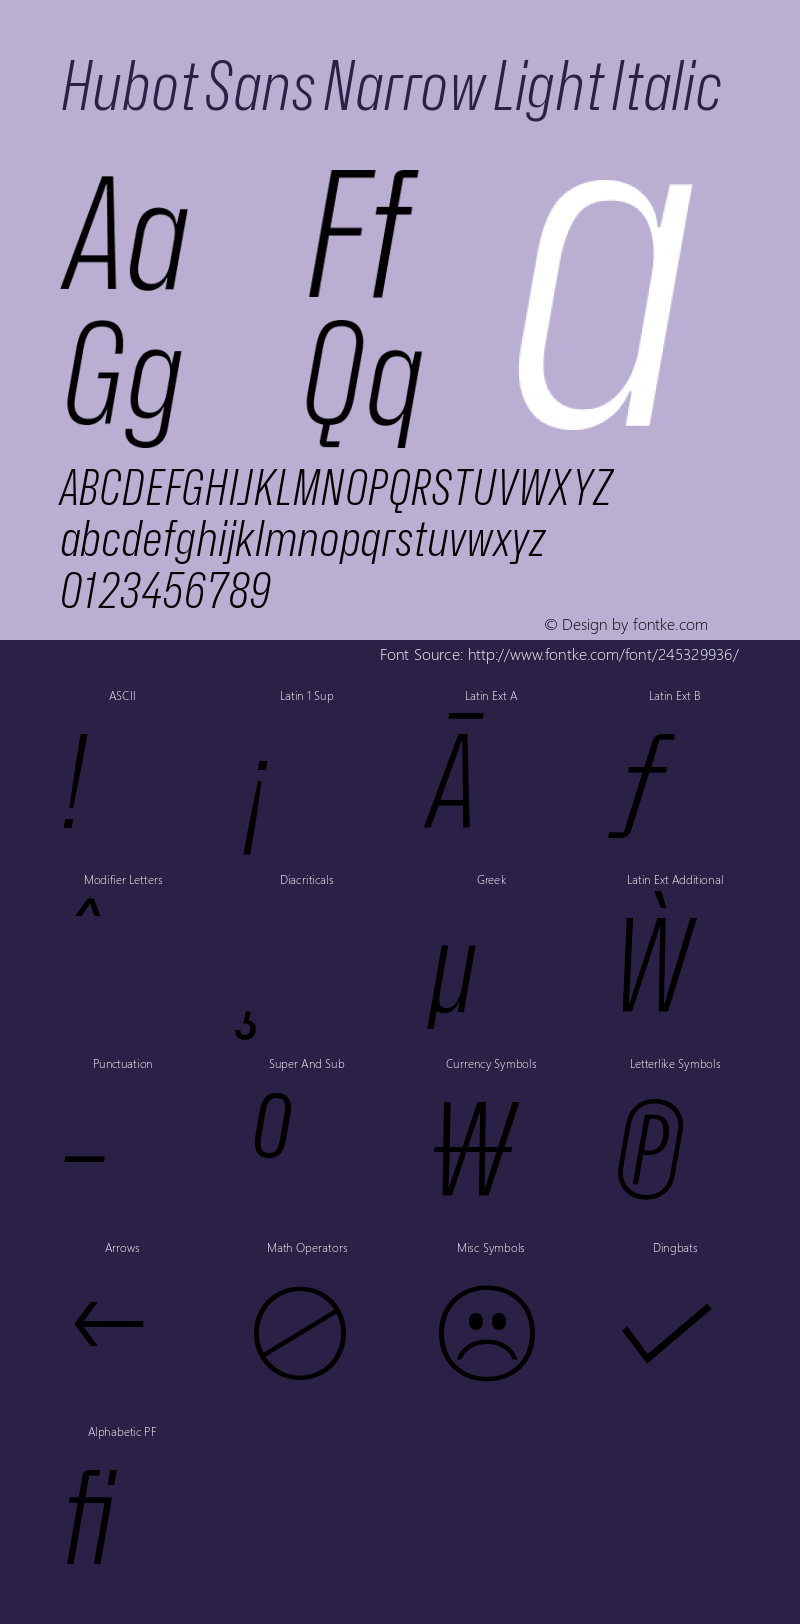 Hubot Sans Narrow Light Italic Version 1.000 | FøM Fix图片样张